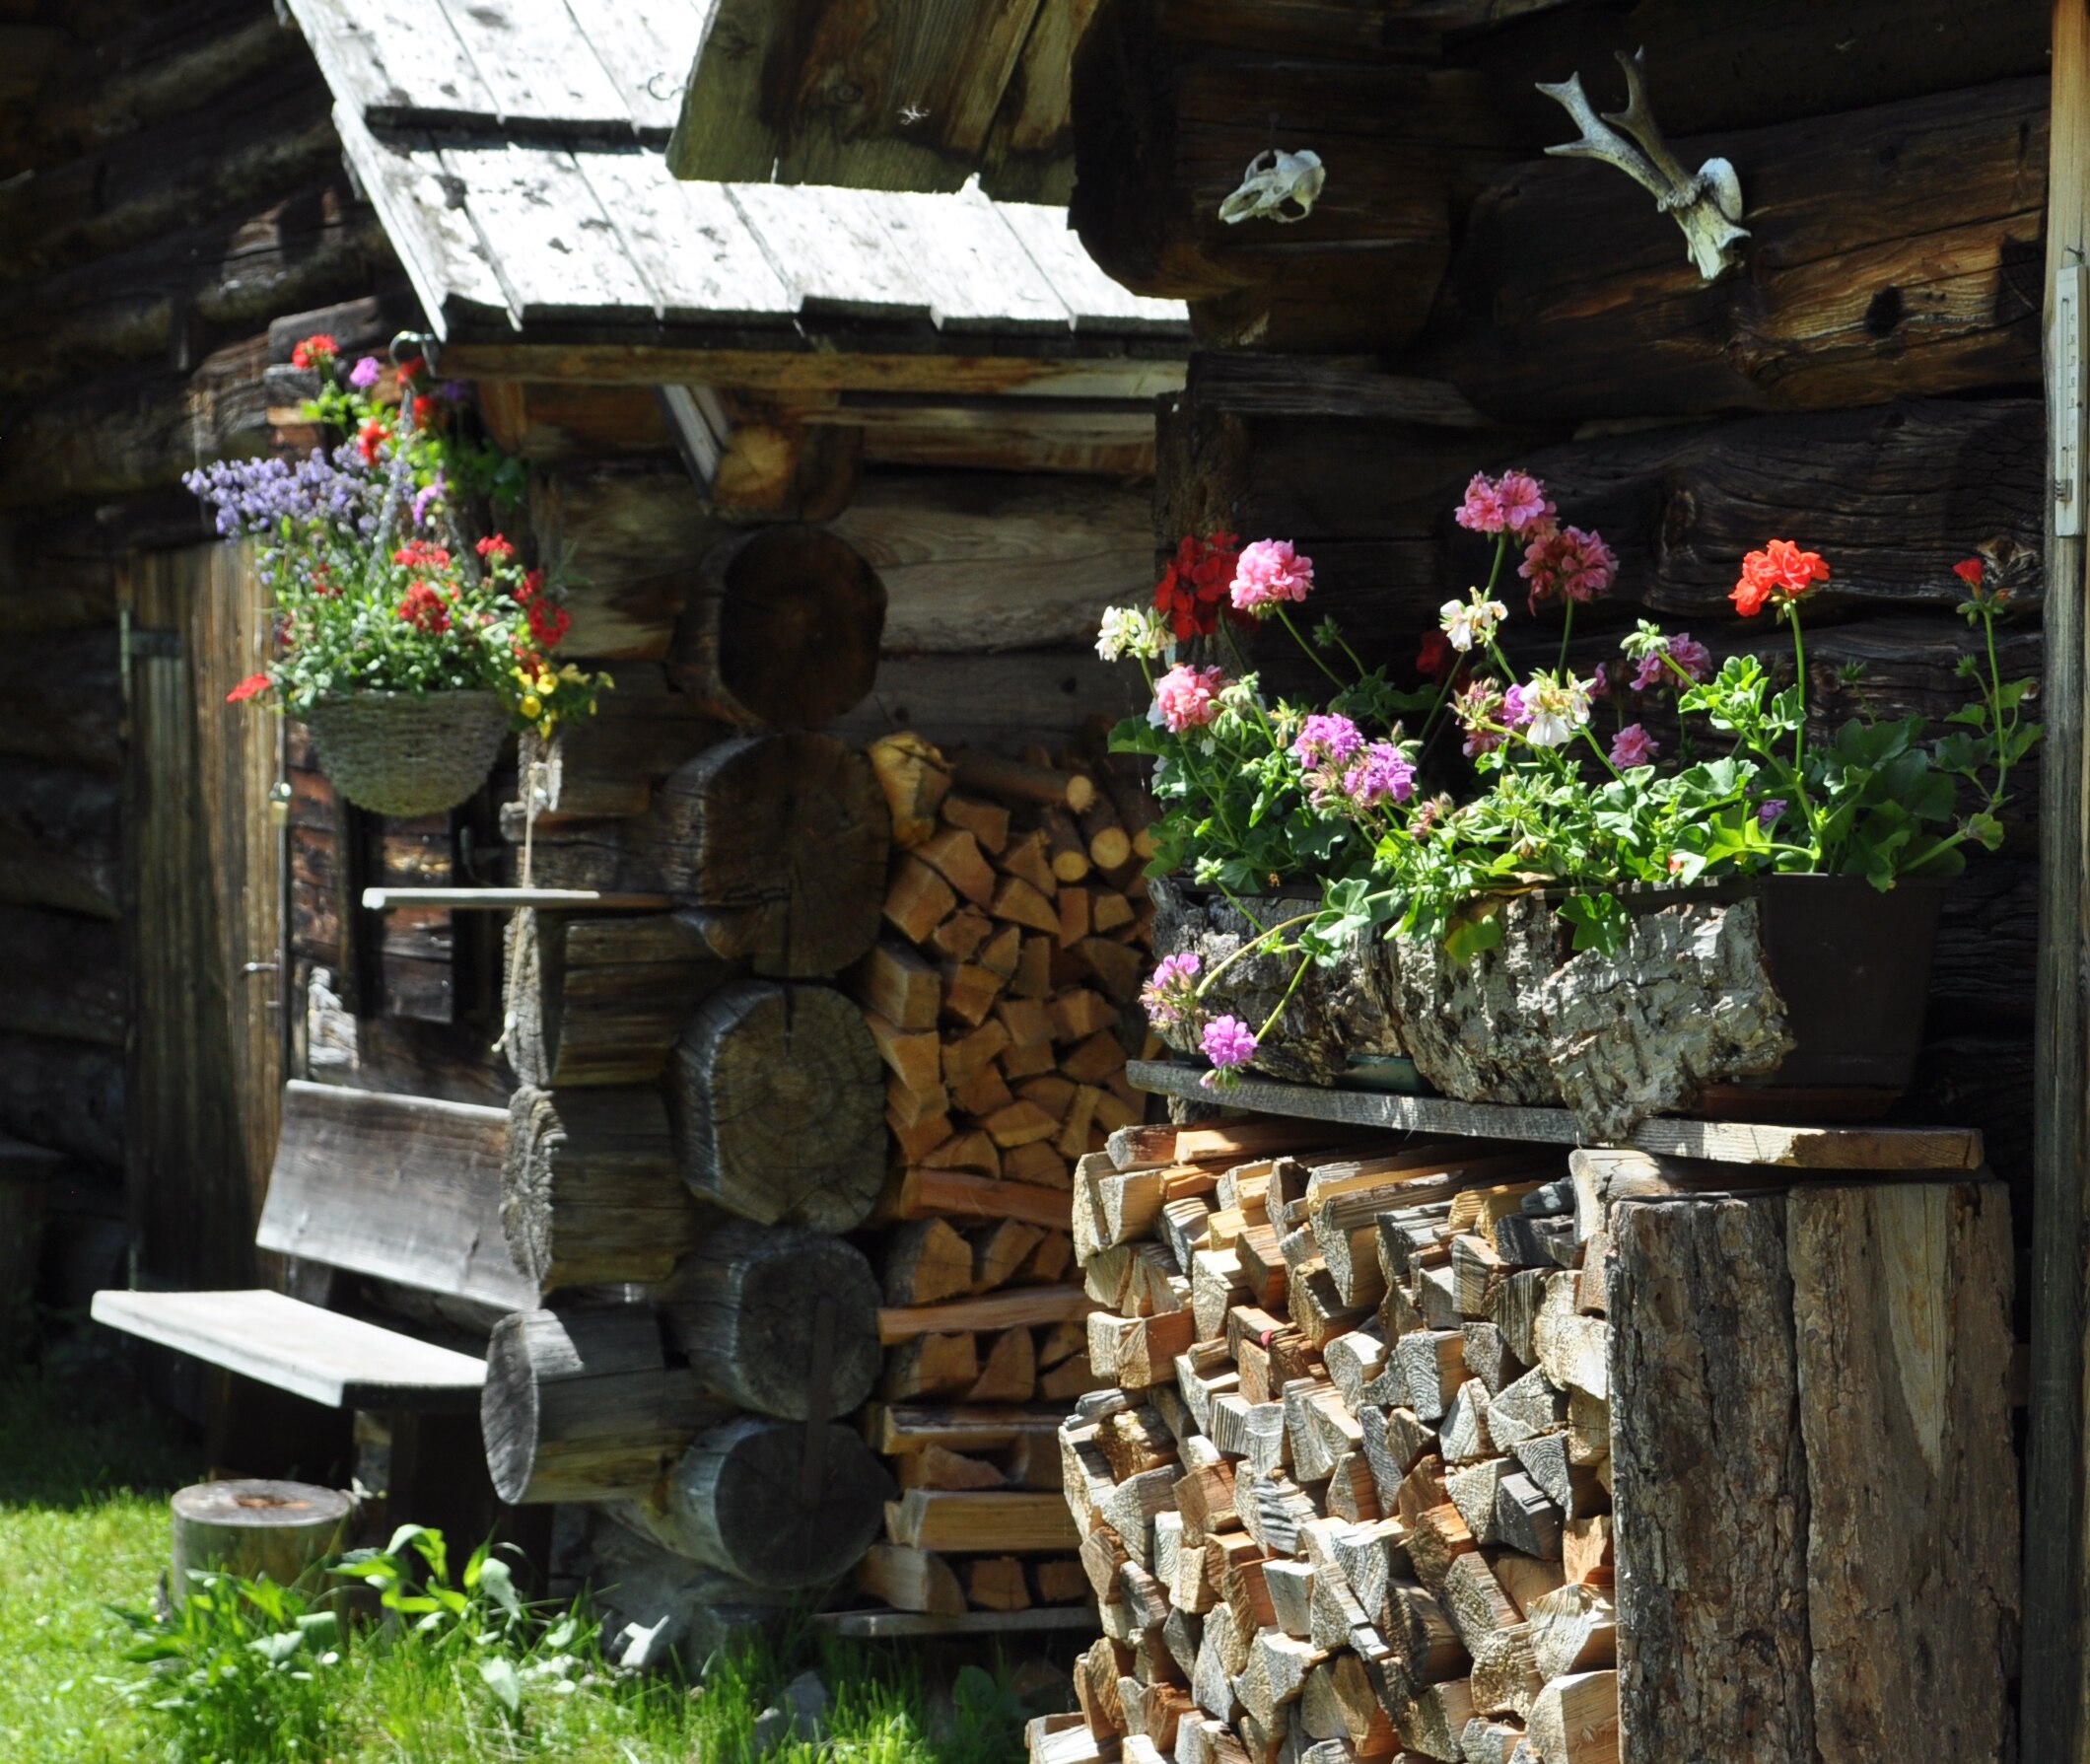 Wer Ruhe und Erholung sucht, ist in Göriach mit seiner authentischen Bergbauernkultur genau richtig.